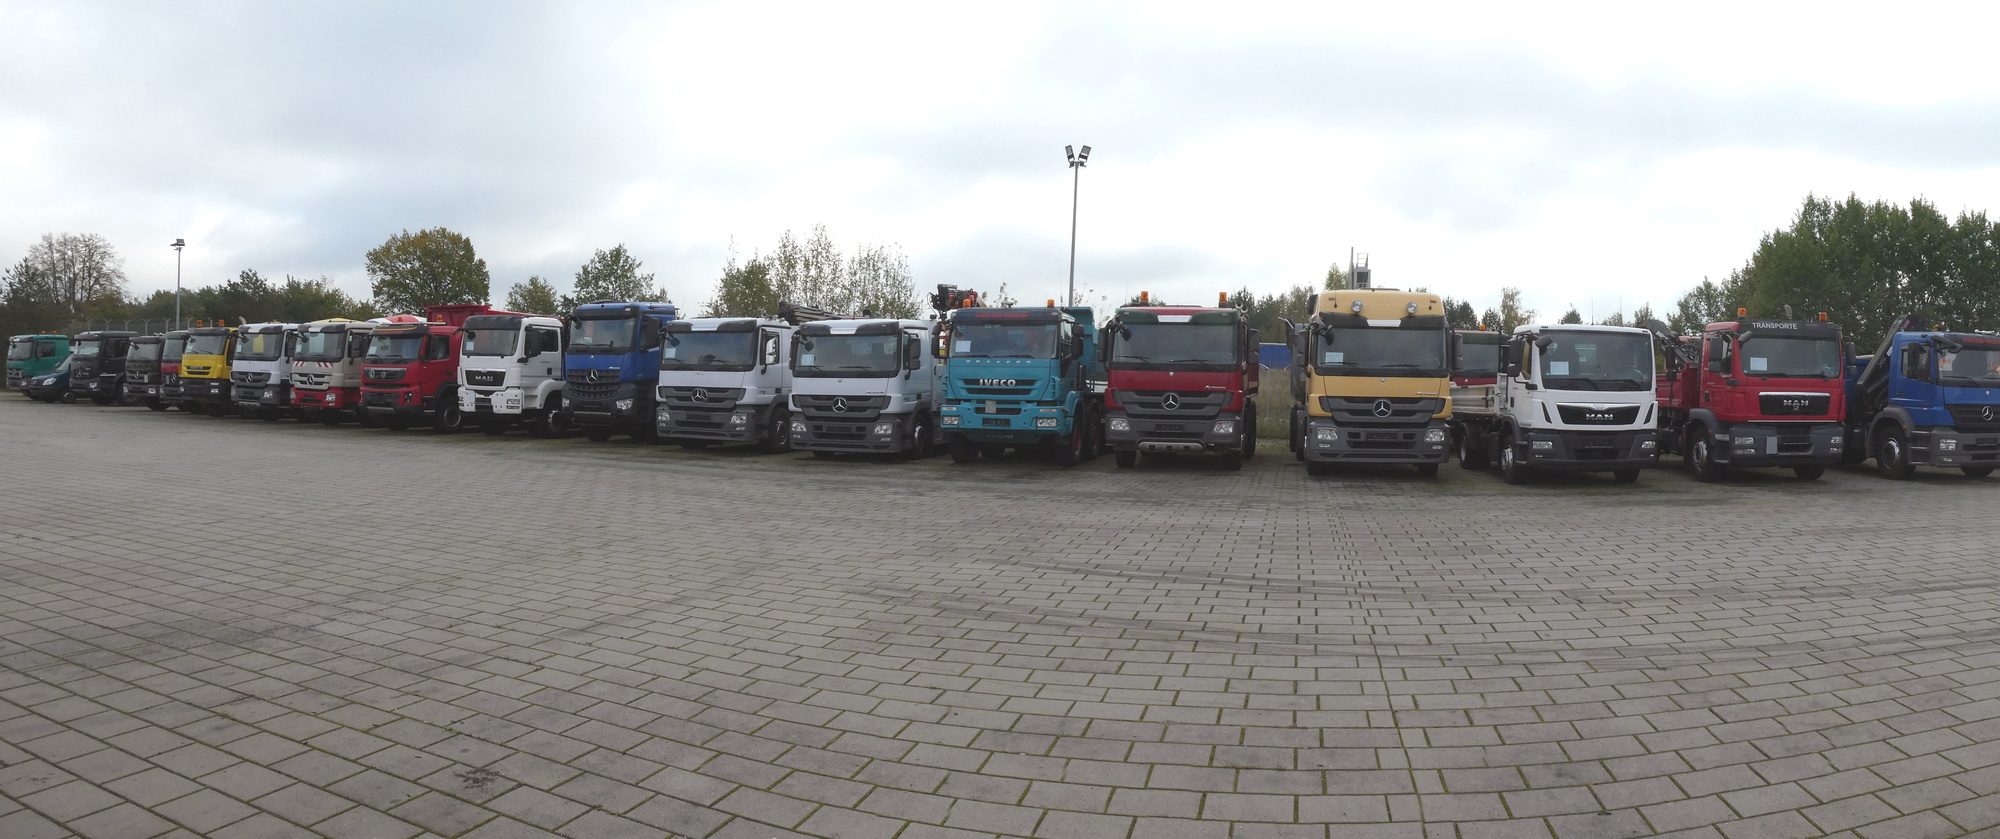 Henze Truck GmbH - وحدات جر undefined: صورة 1